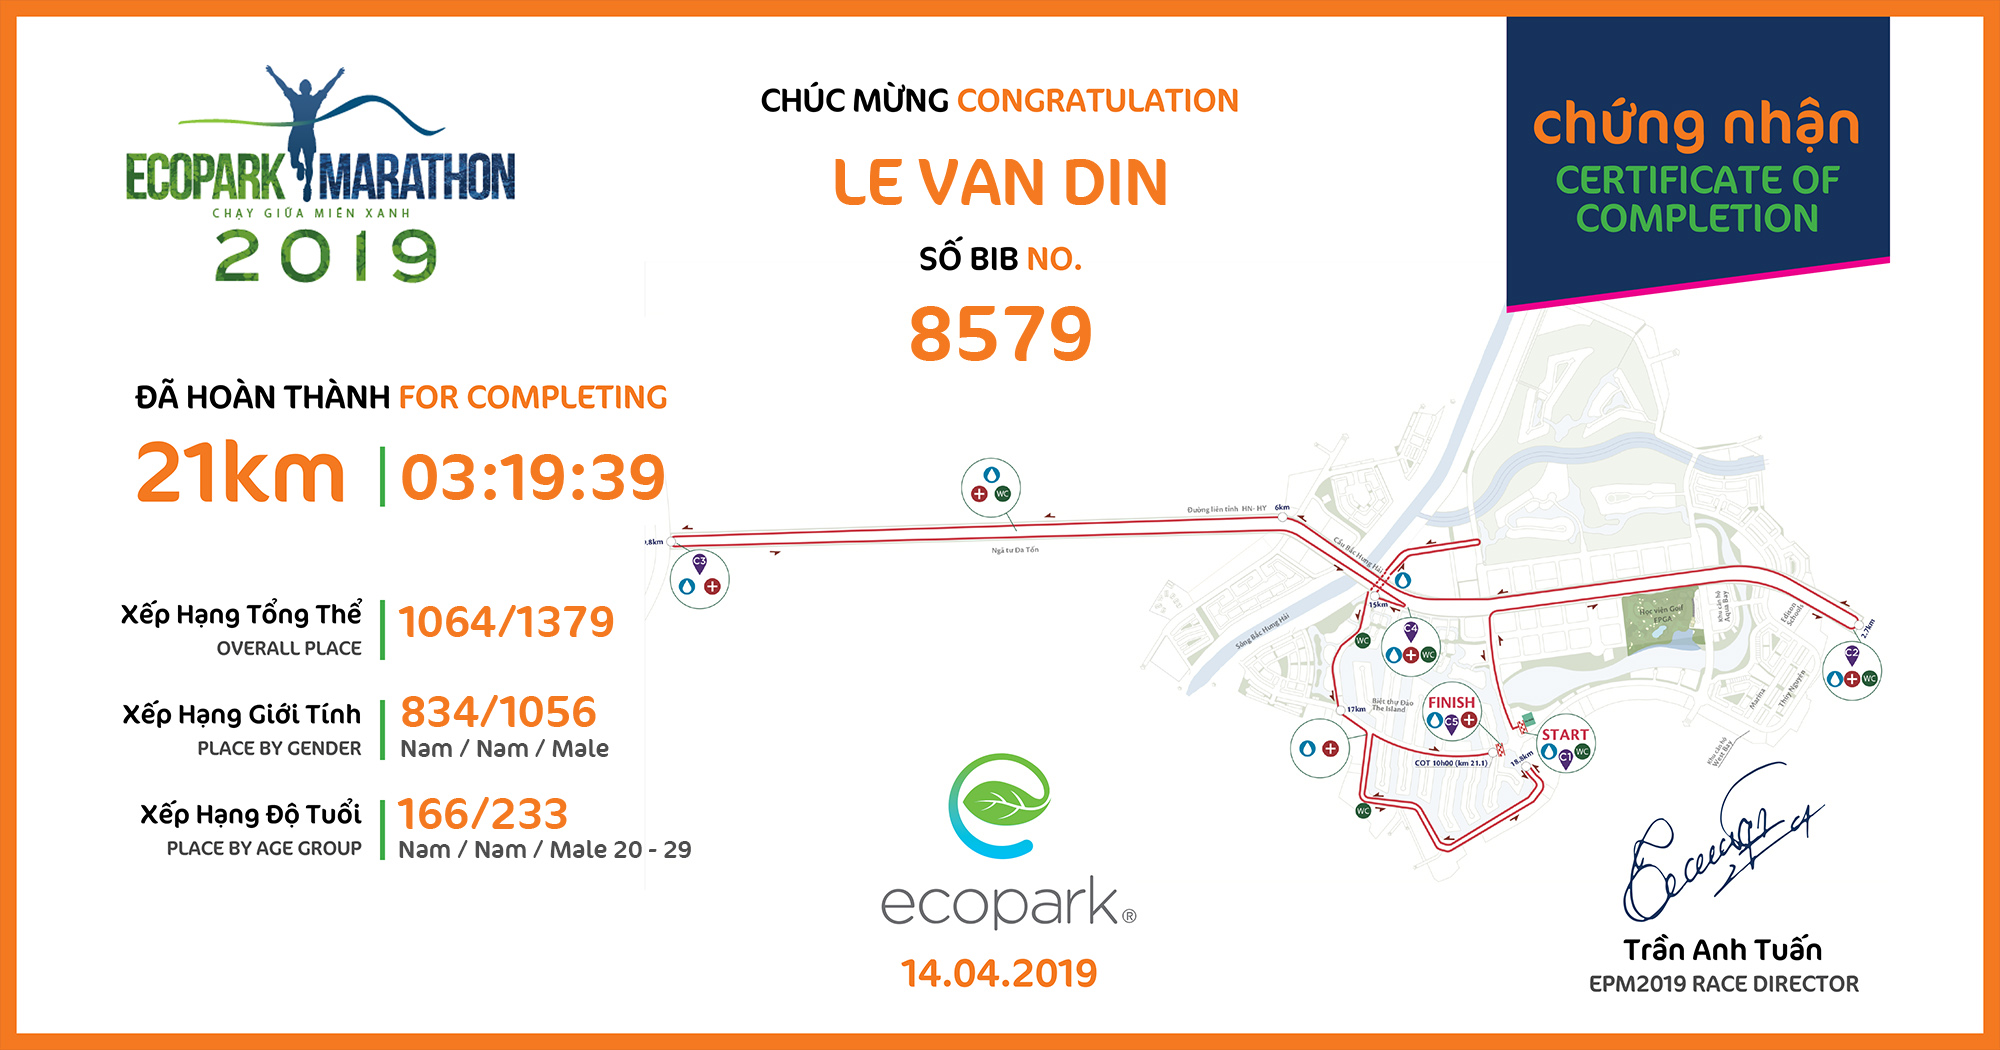 8579 - Le Van Din